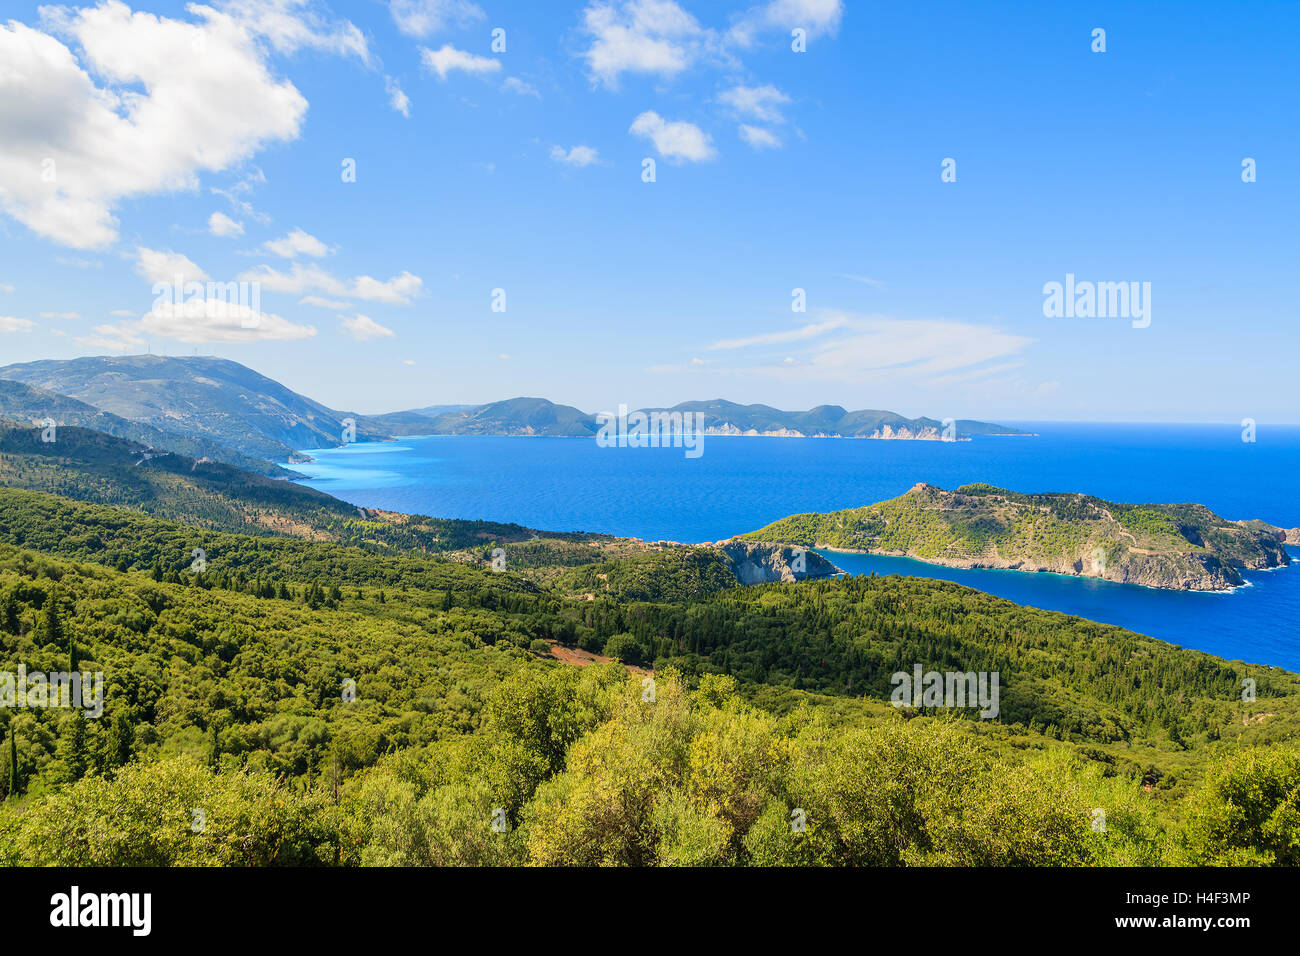 Bleu de la mer et les montagnes sur la côte de l'île de Céphalonie, près de la ville d'Assos, Grèce Banque D'Images